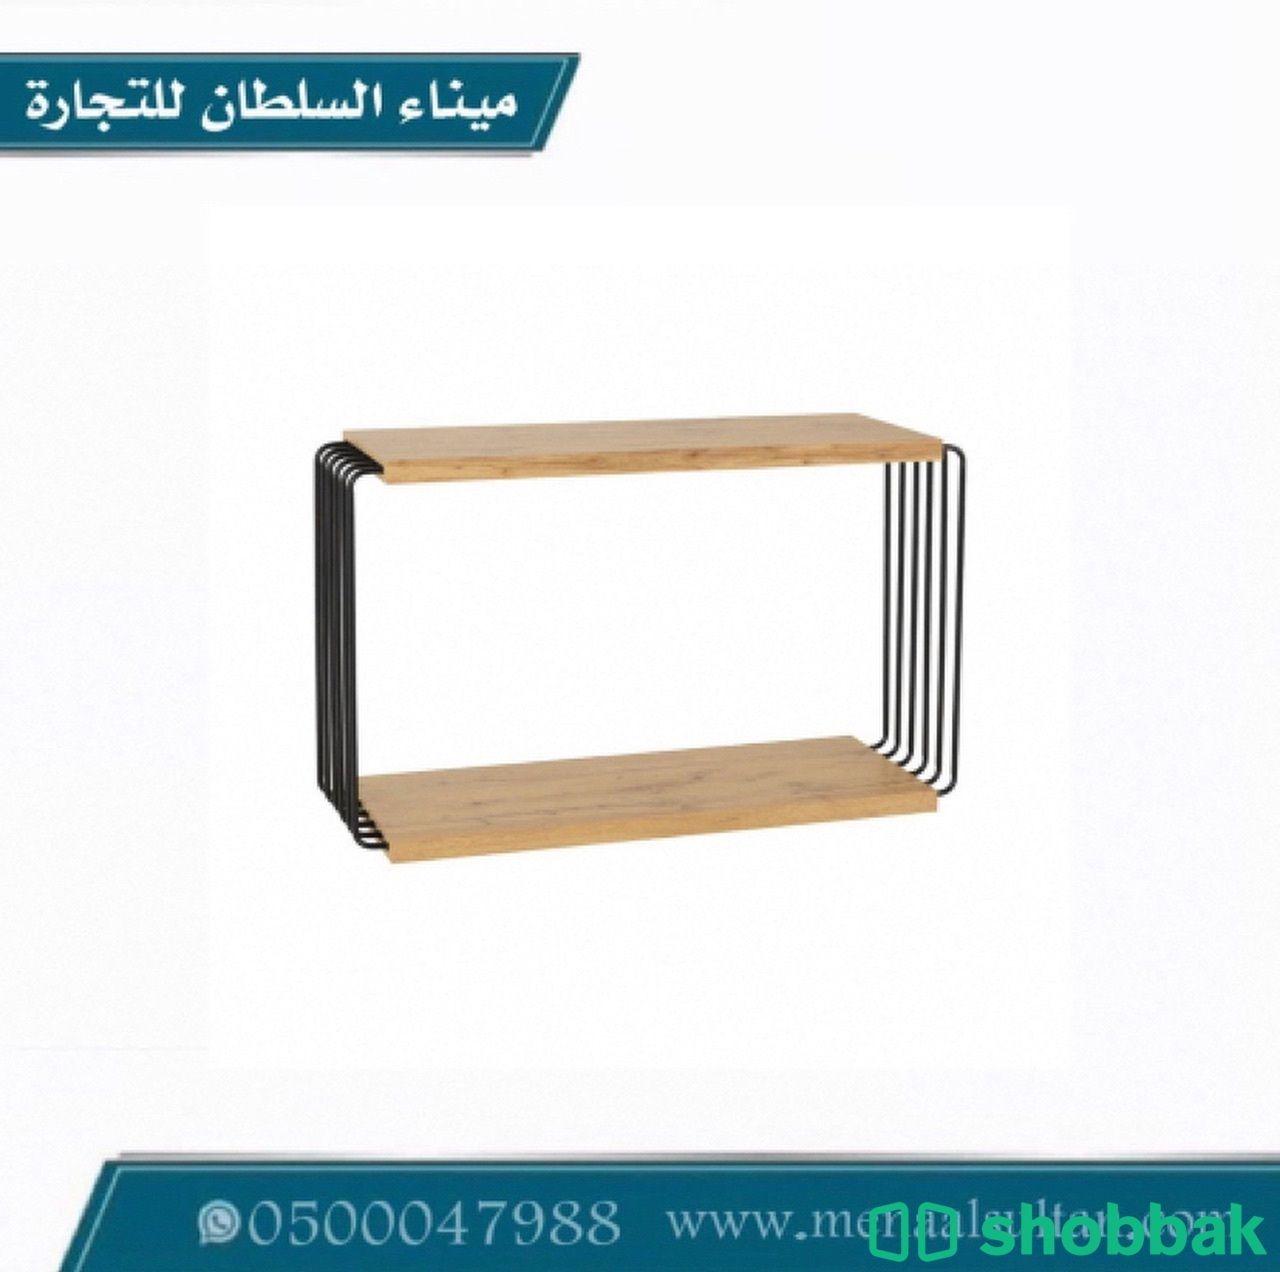 طاولة مدخل خشب و حديد   Shobbak Saudi Arabia